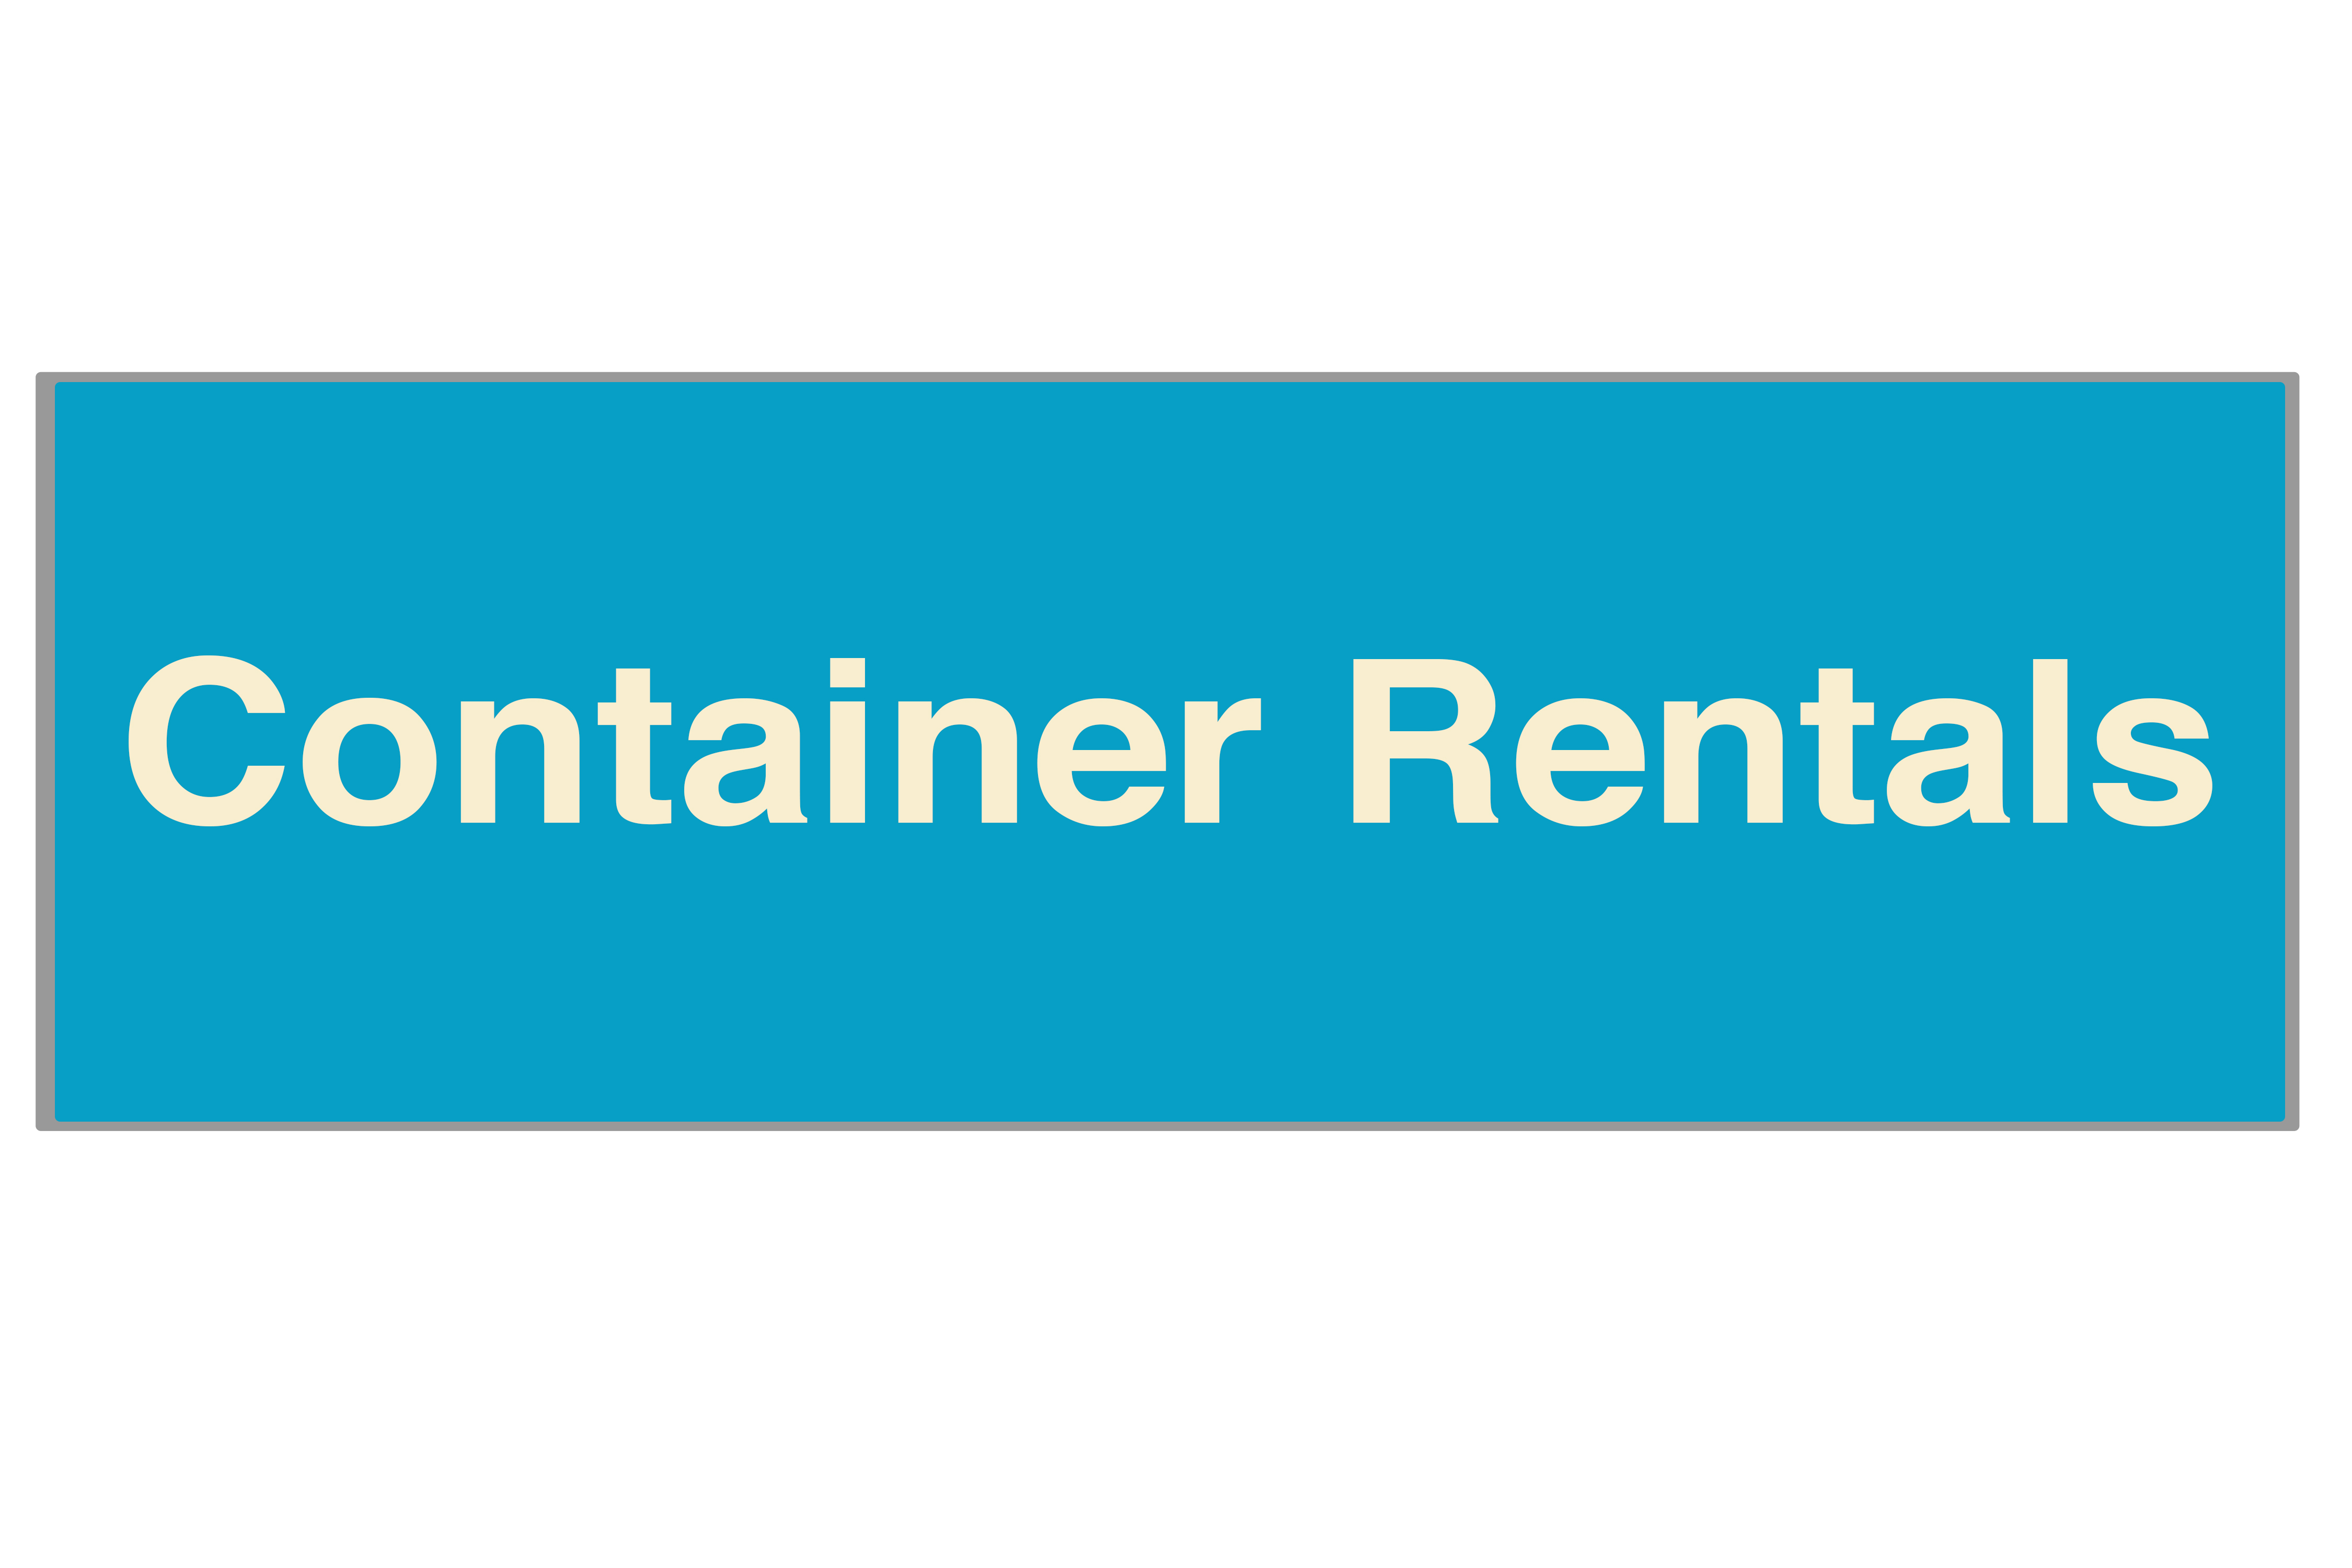 ContainerRentals